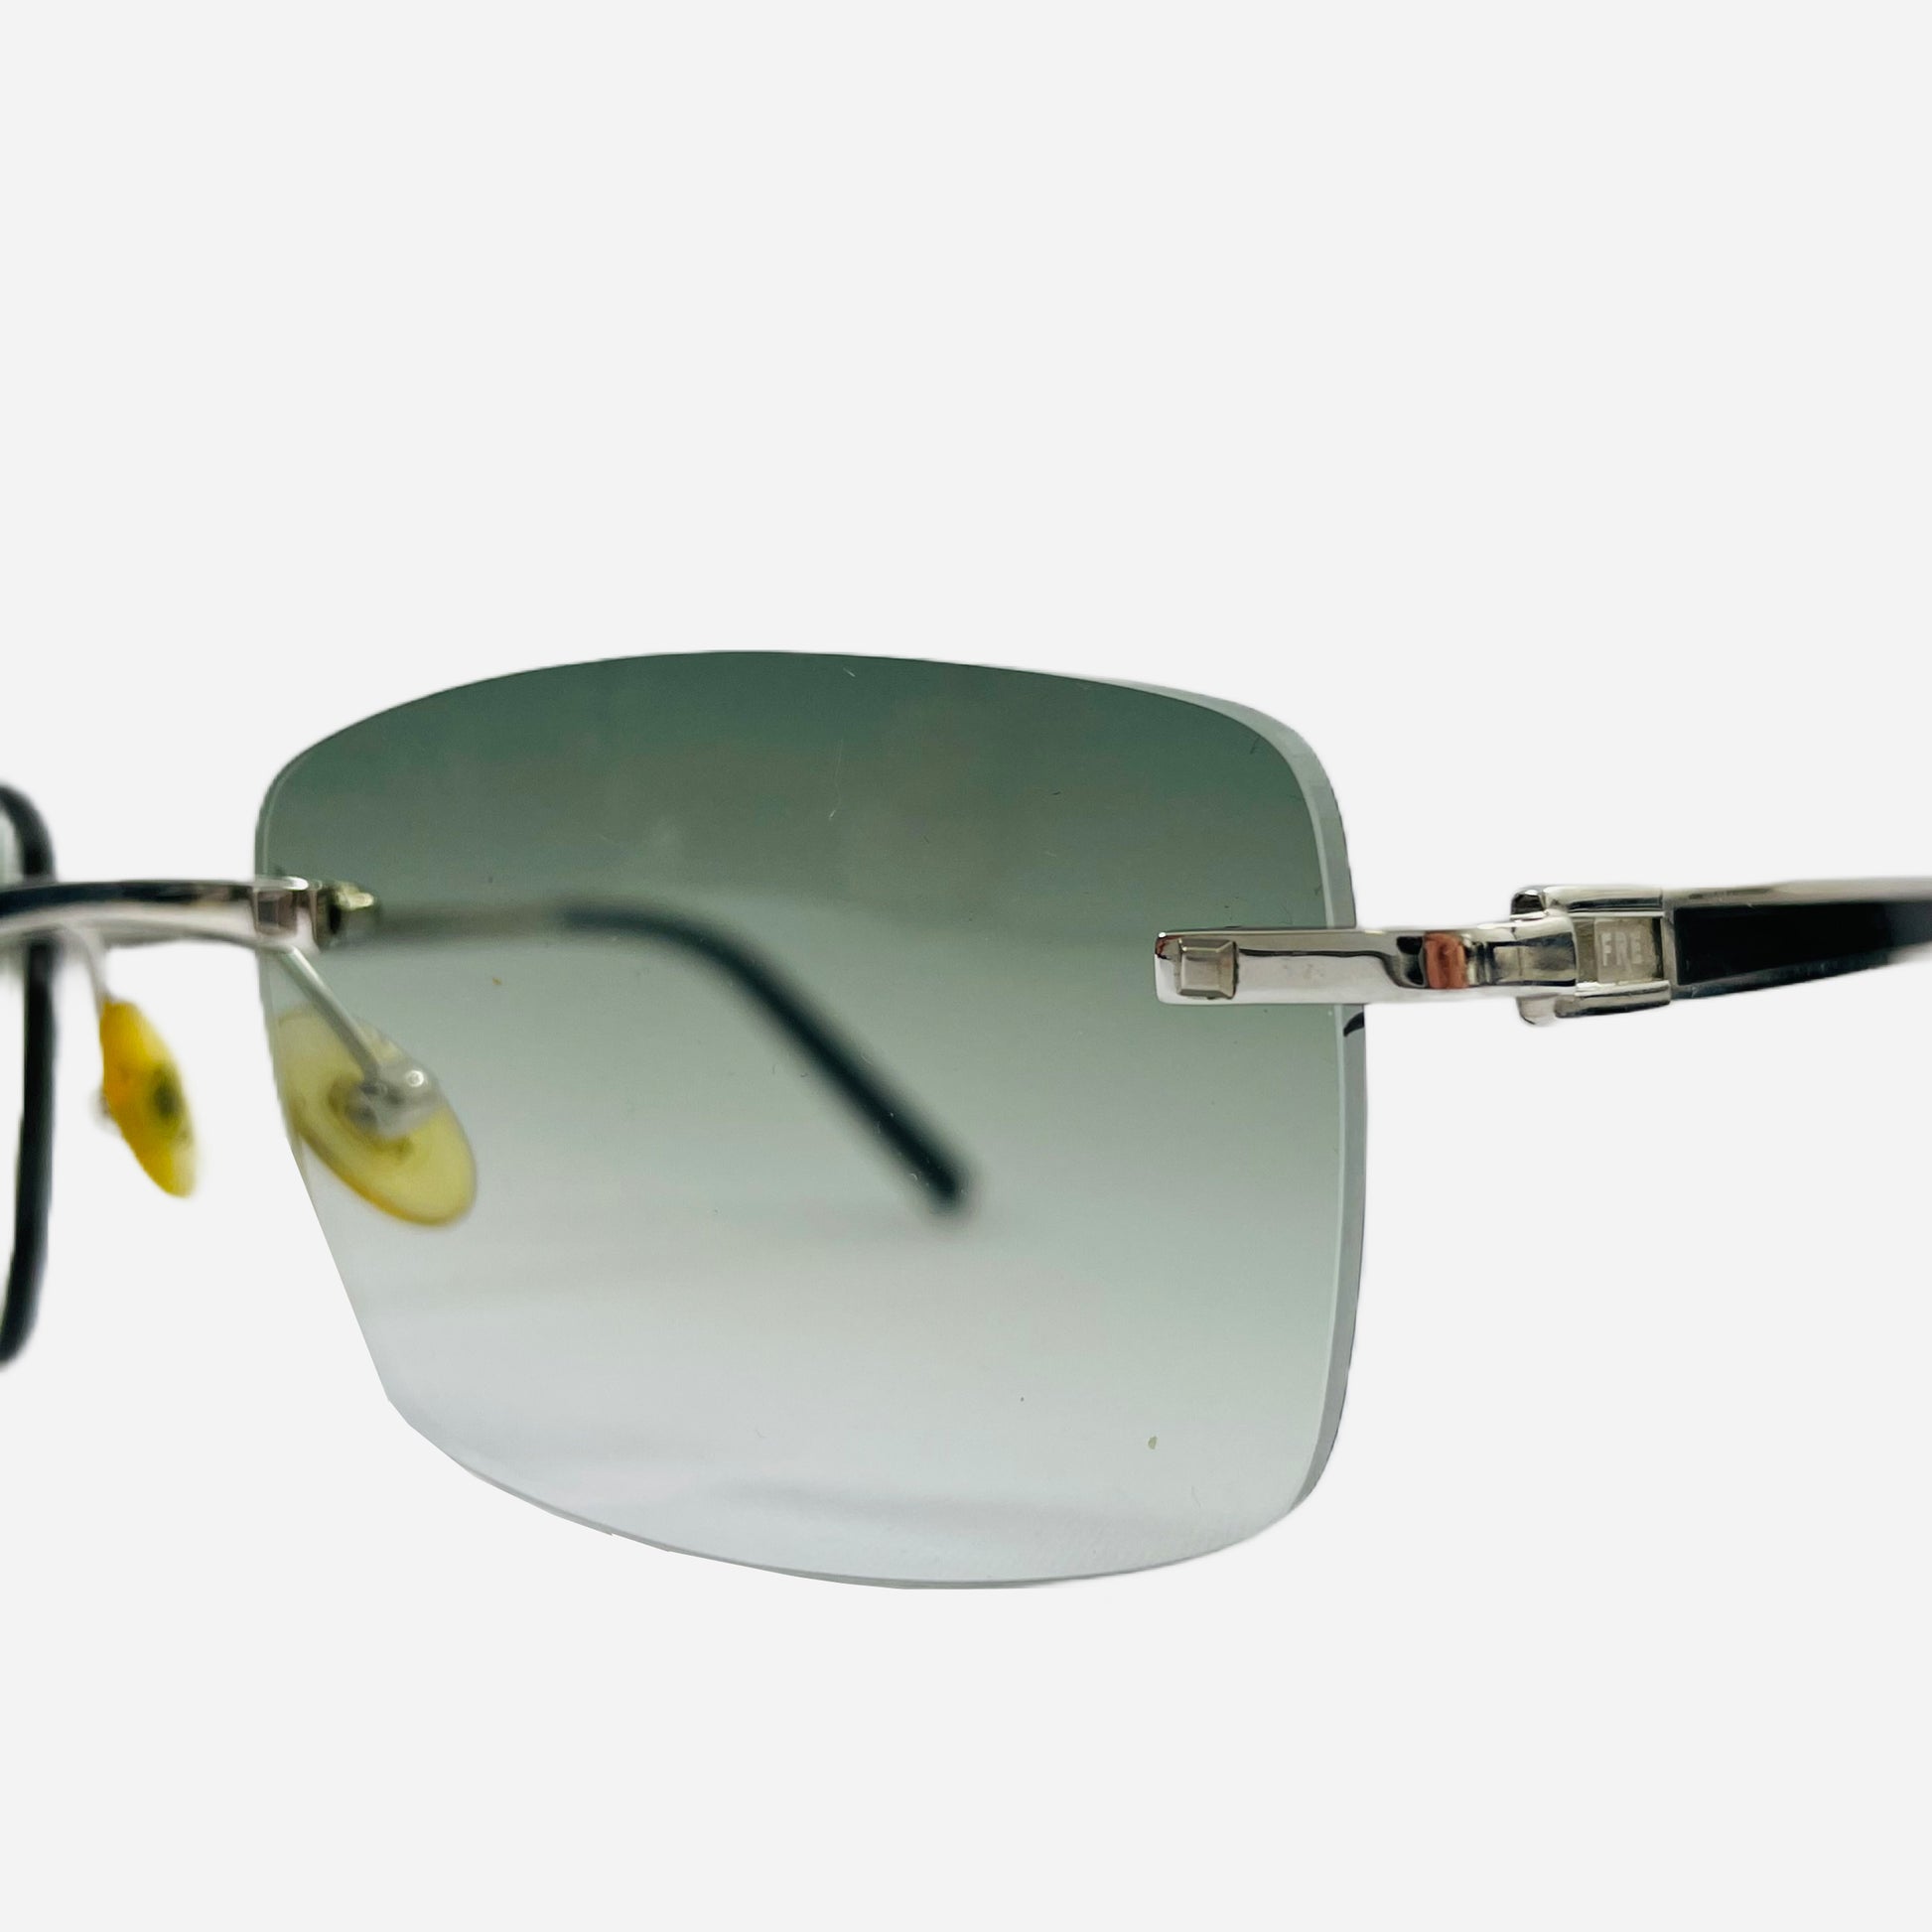 Fred-Paris-Sonnenbrille-Sunglasses-Jamaique-rimless-rahmenlose-Sonnenbrille-the-seekers-front-side-detail